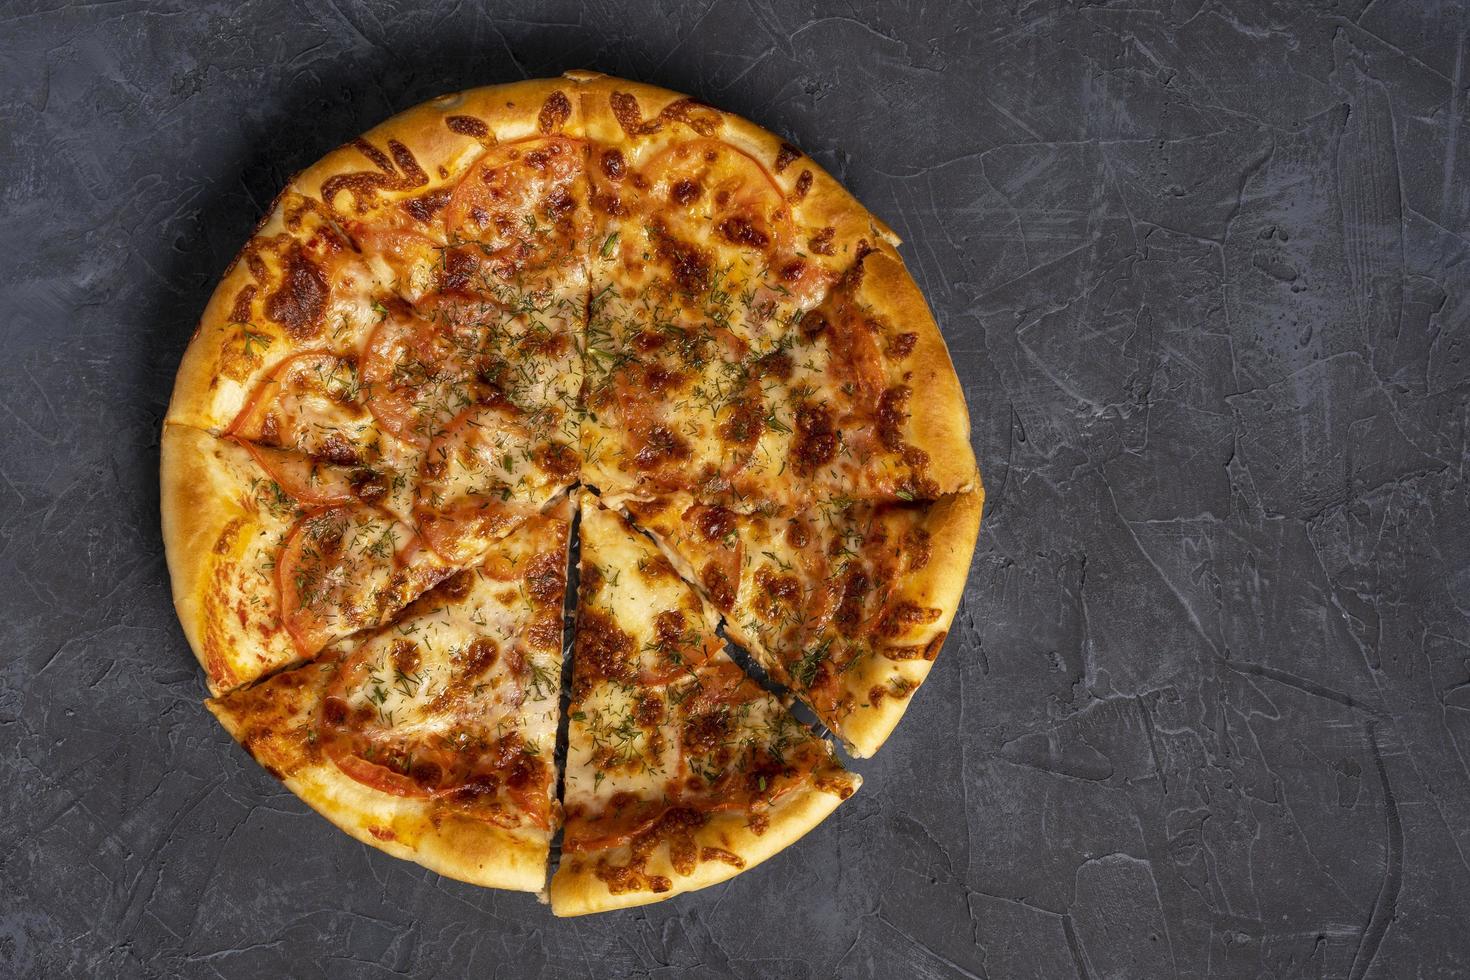 délicieuse pizza chaude sur fond gris-noir. vue de dessus d'une délicieuse pizza chaude cuite au four photo